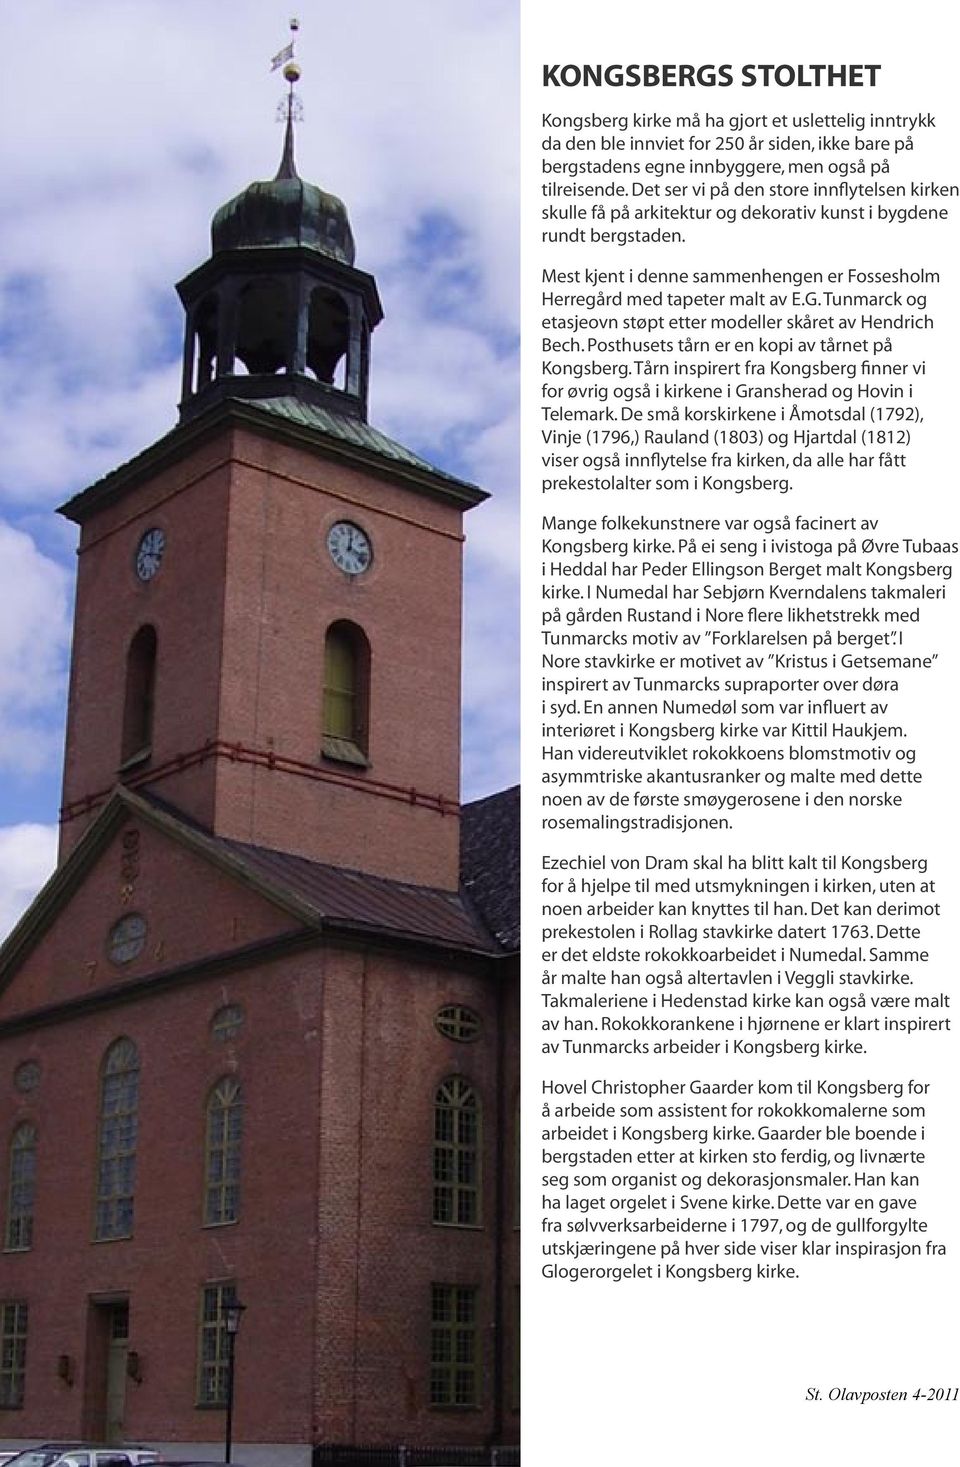 Tunmarck og etasjeovn støpt etter modeller skåret av Hendrich Bech. Posthusets tårn er en kopi av tårnet på Kongsberg.